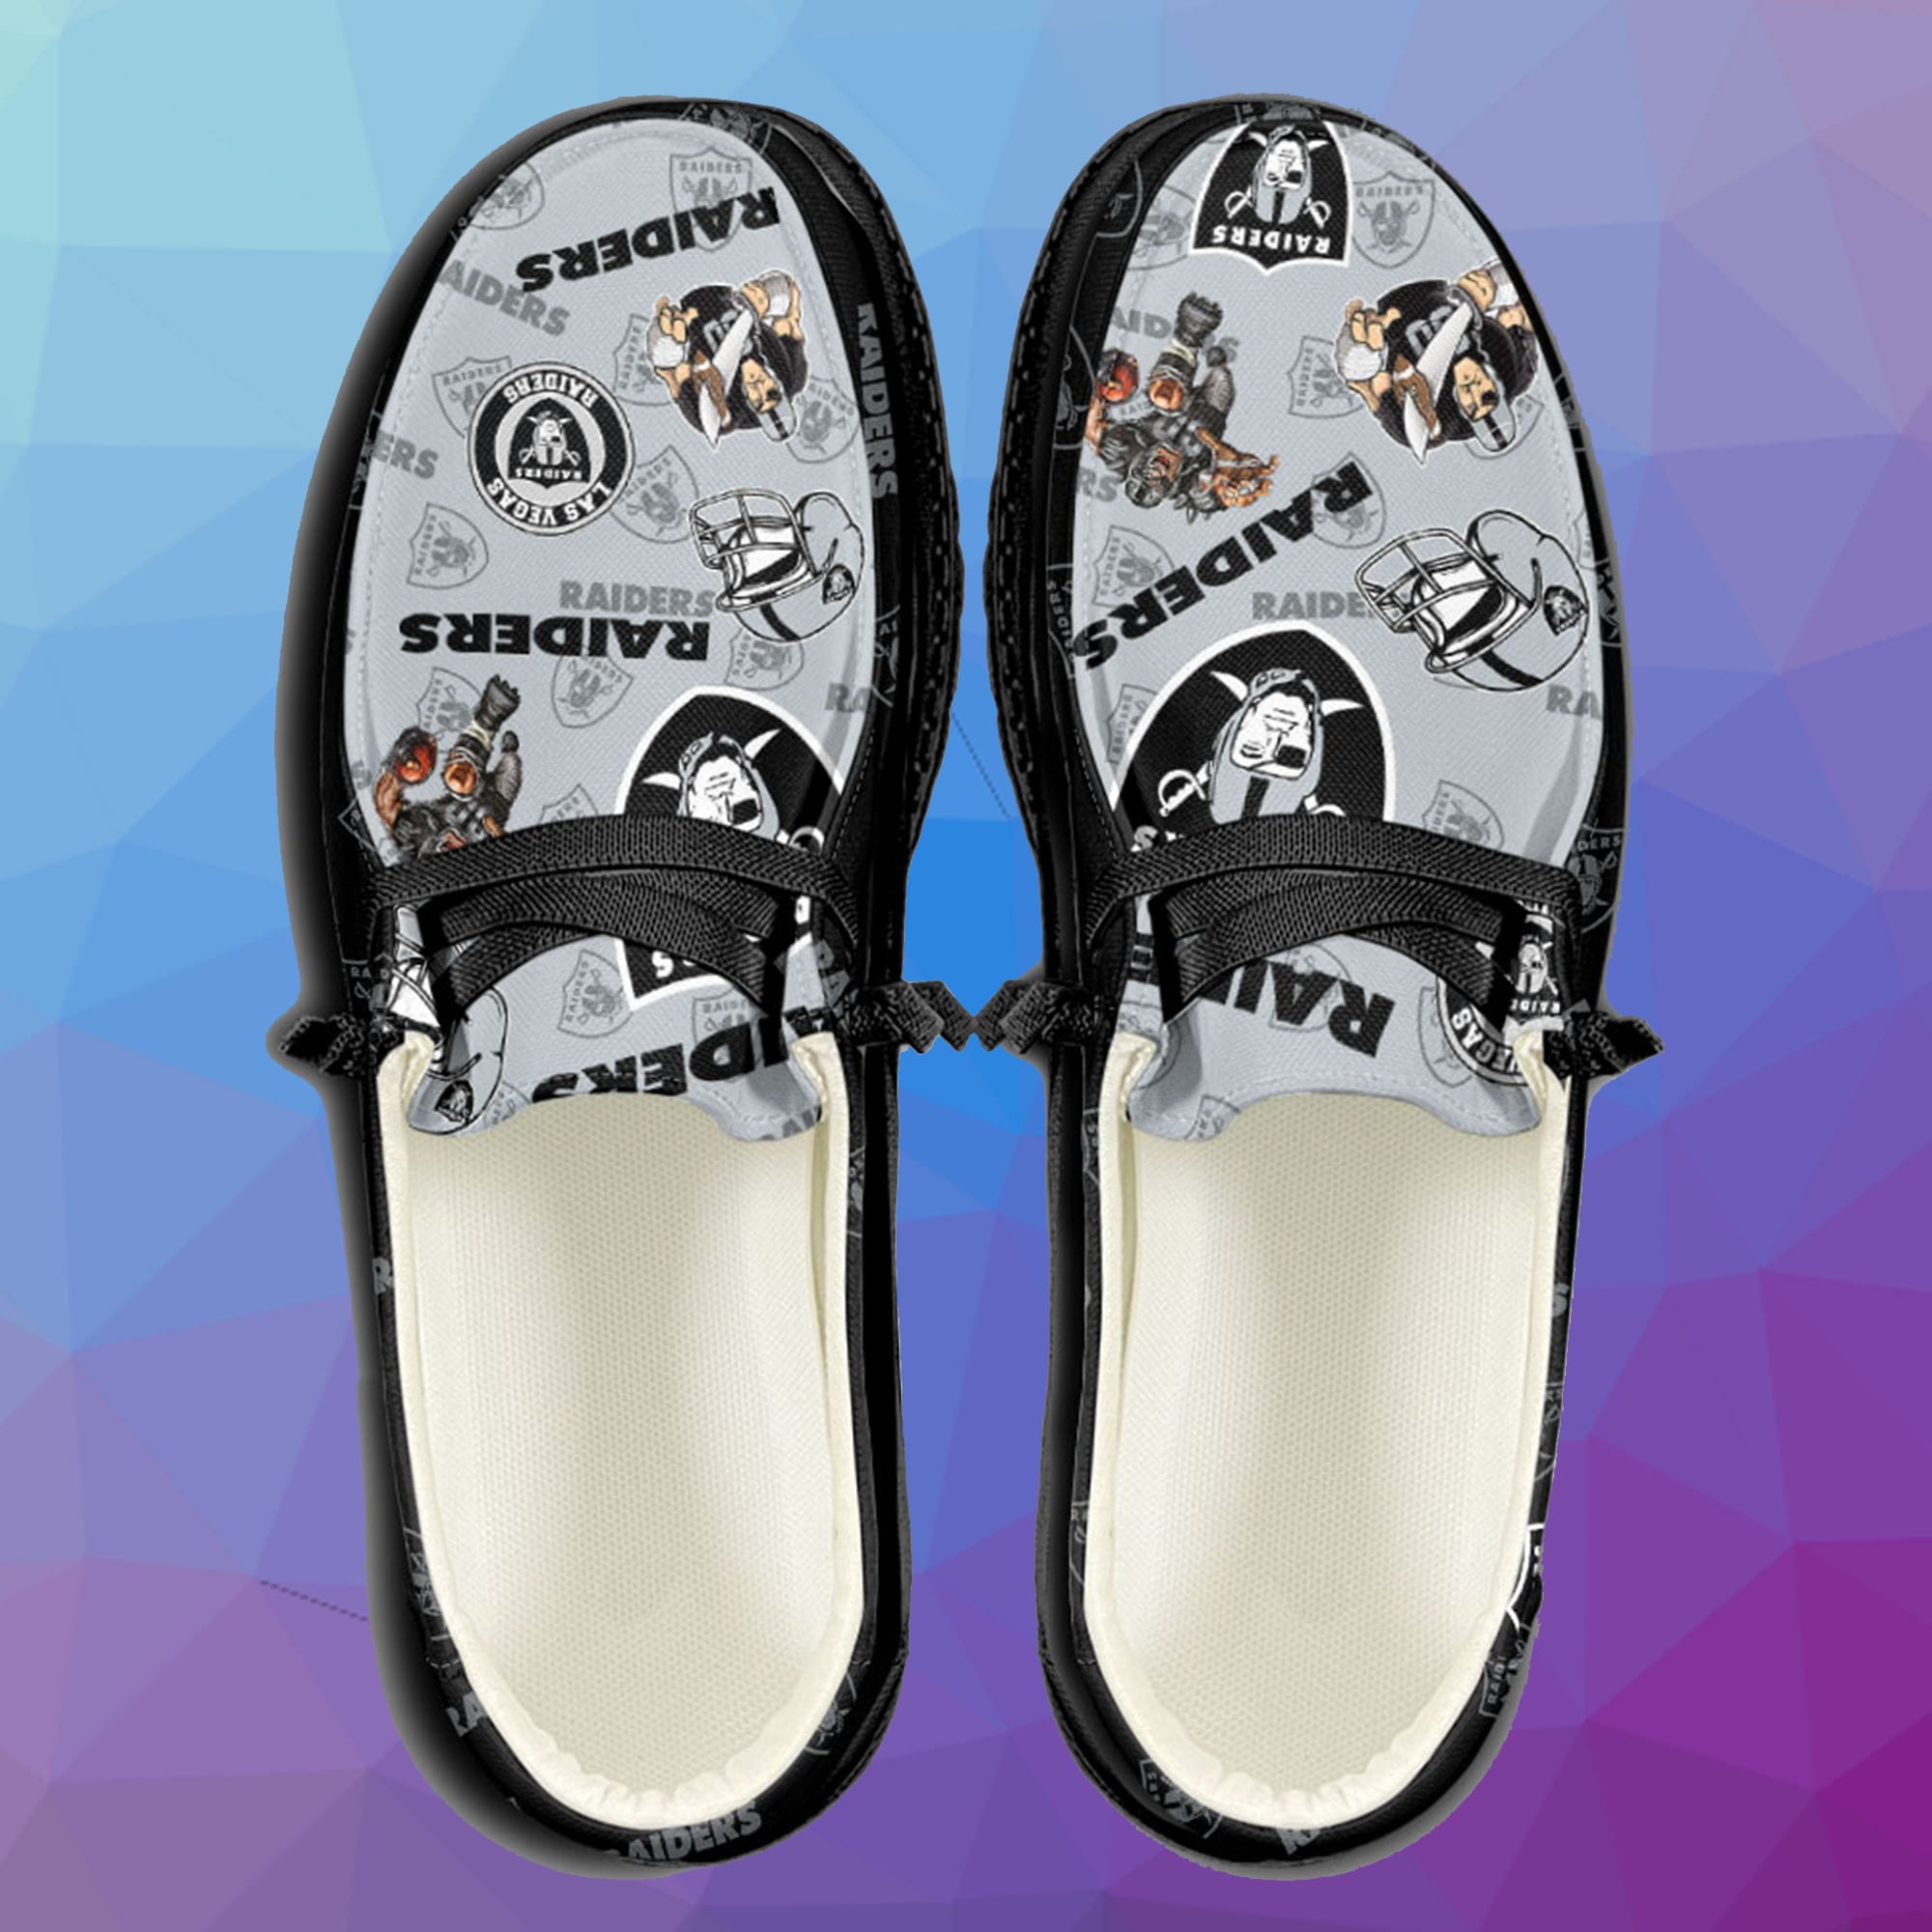 LUXURY NFL Las Vegas Raiders Custom Name Hey Dude Shoes POD Design -  Beetrendstore Store